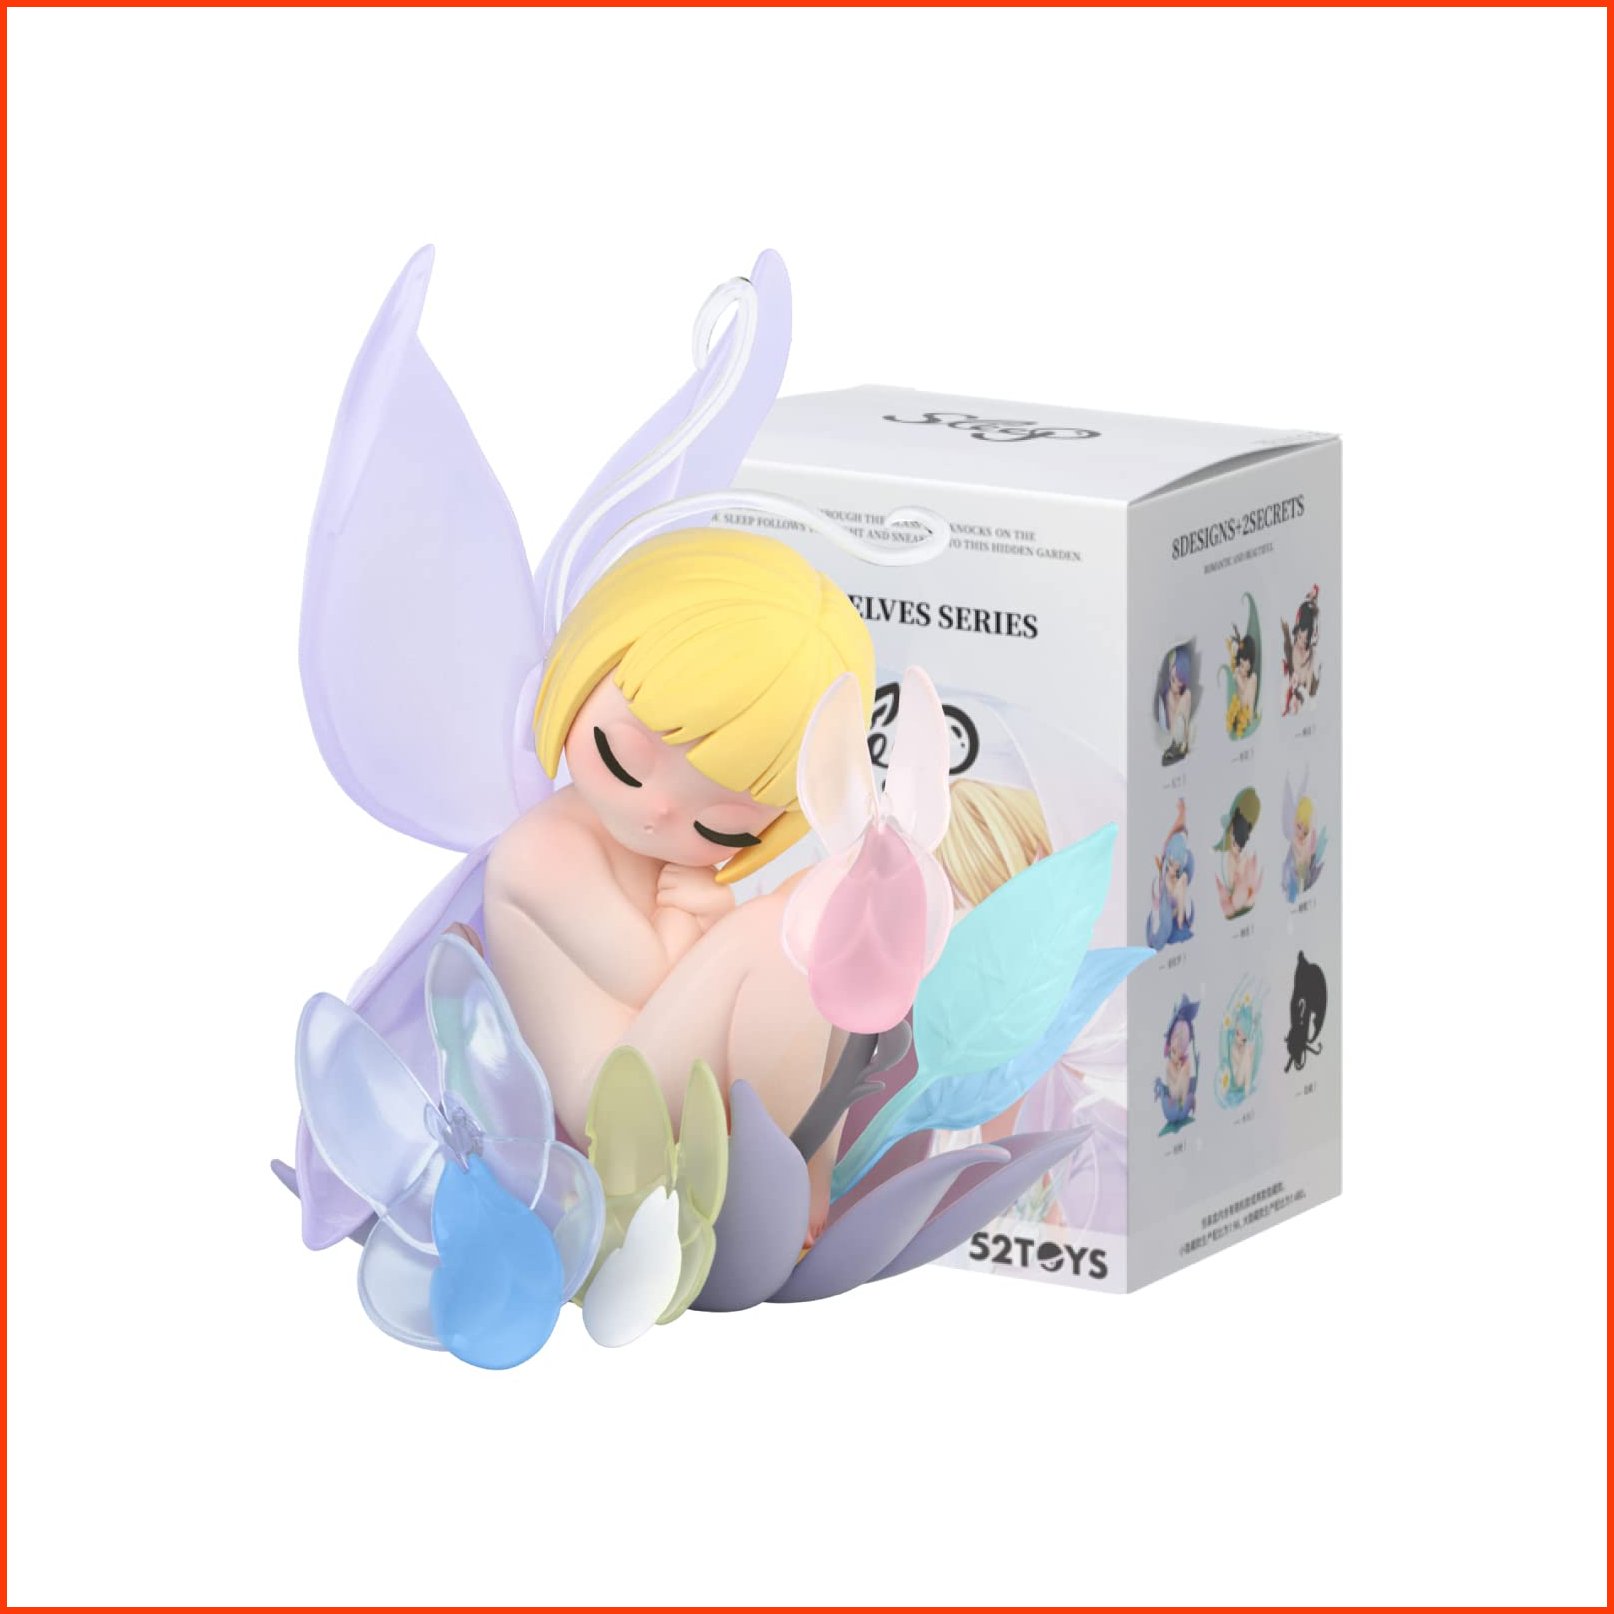 並行輸入品52TOYS Candybox Sleep Flower Elves 1Pc Action Figure Collectible Toy Desktop Decoration 3.3 Inch Best Gift